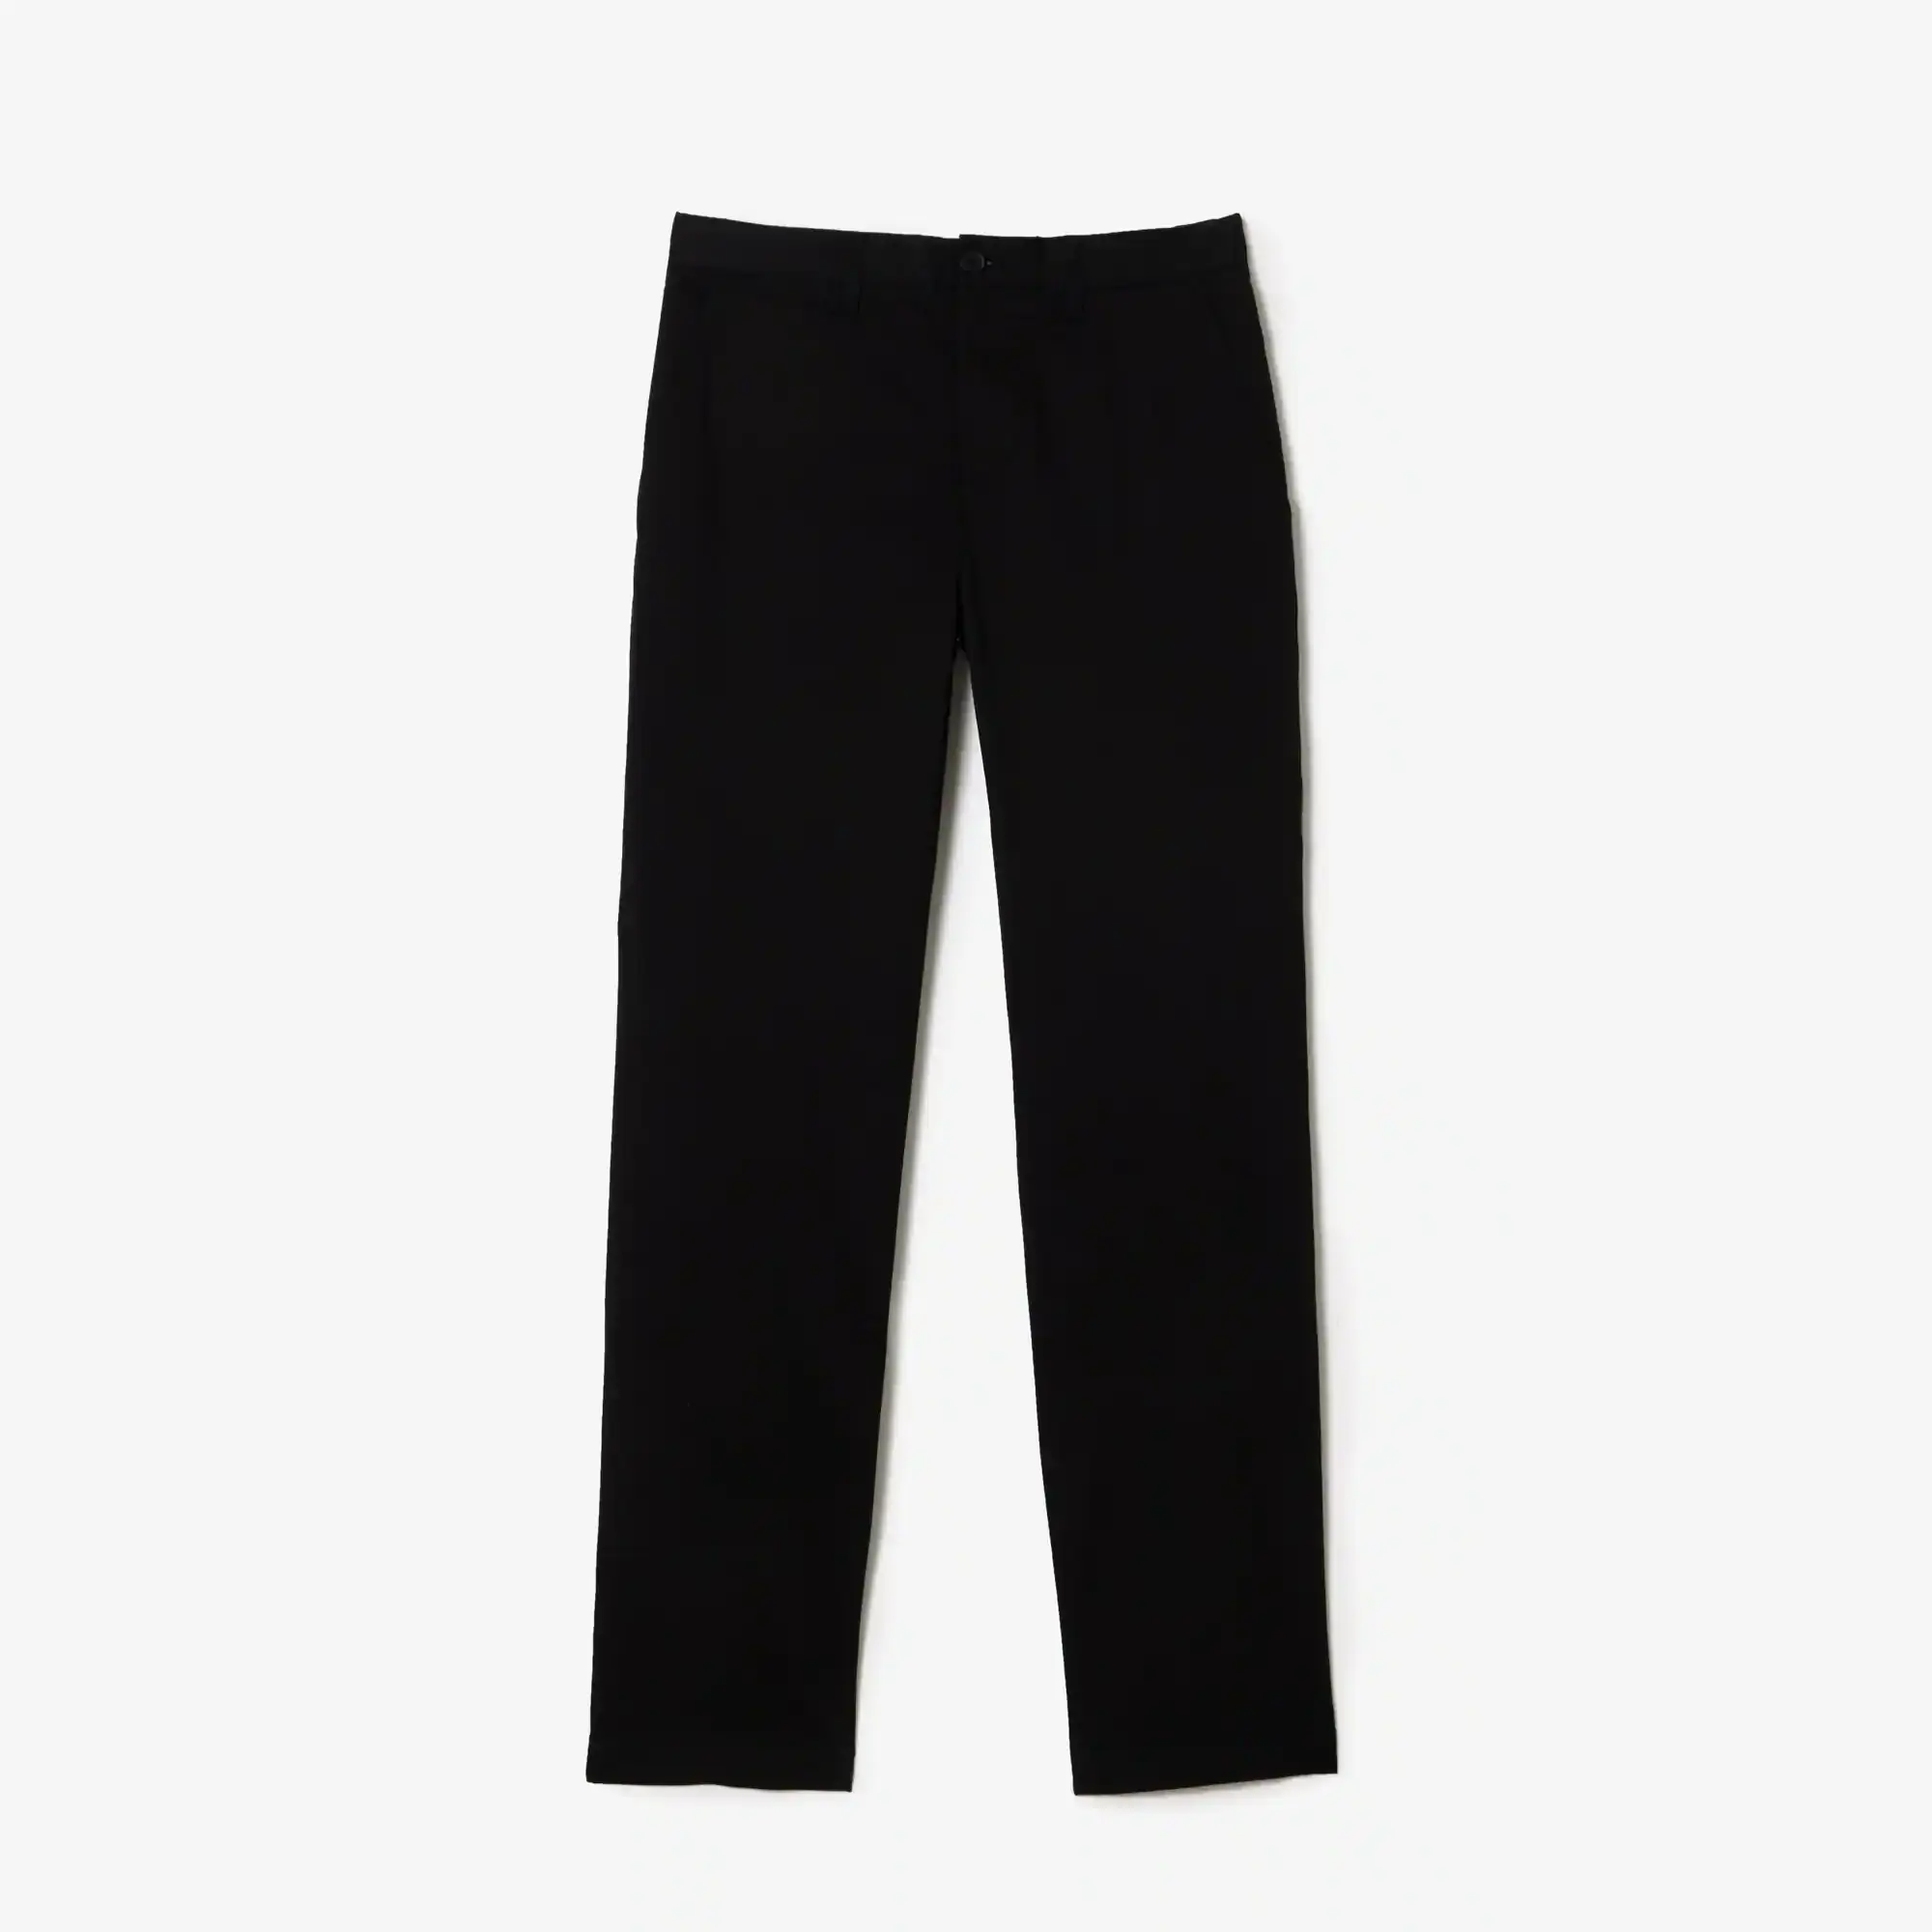 Lacoste Men's Slim Fit Stretch Cotton Trousers. 2